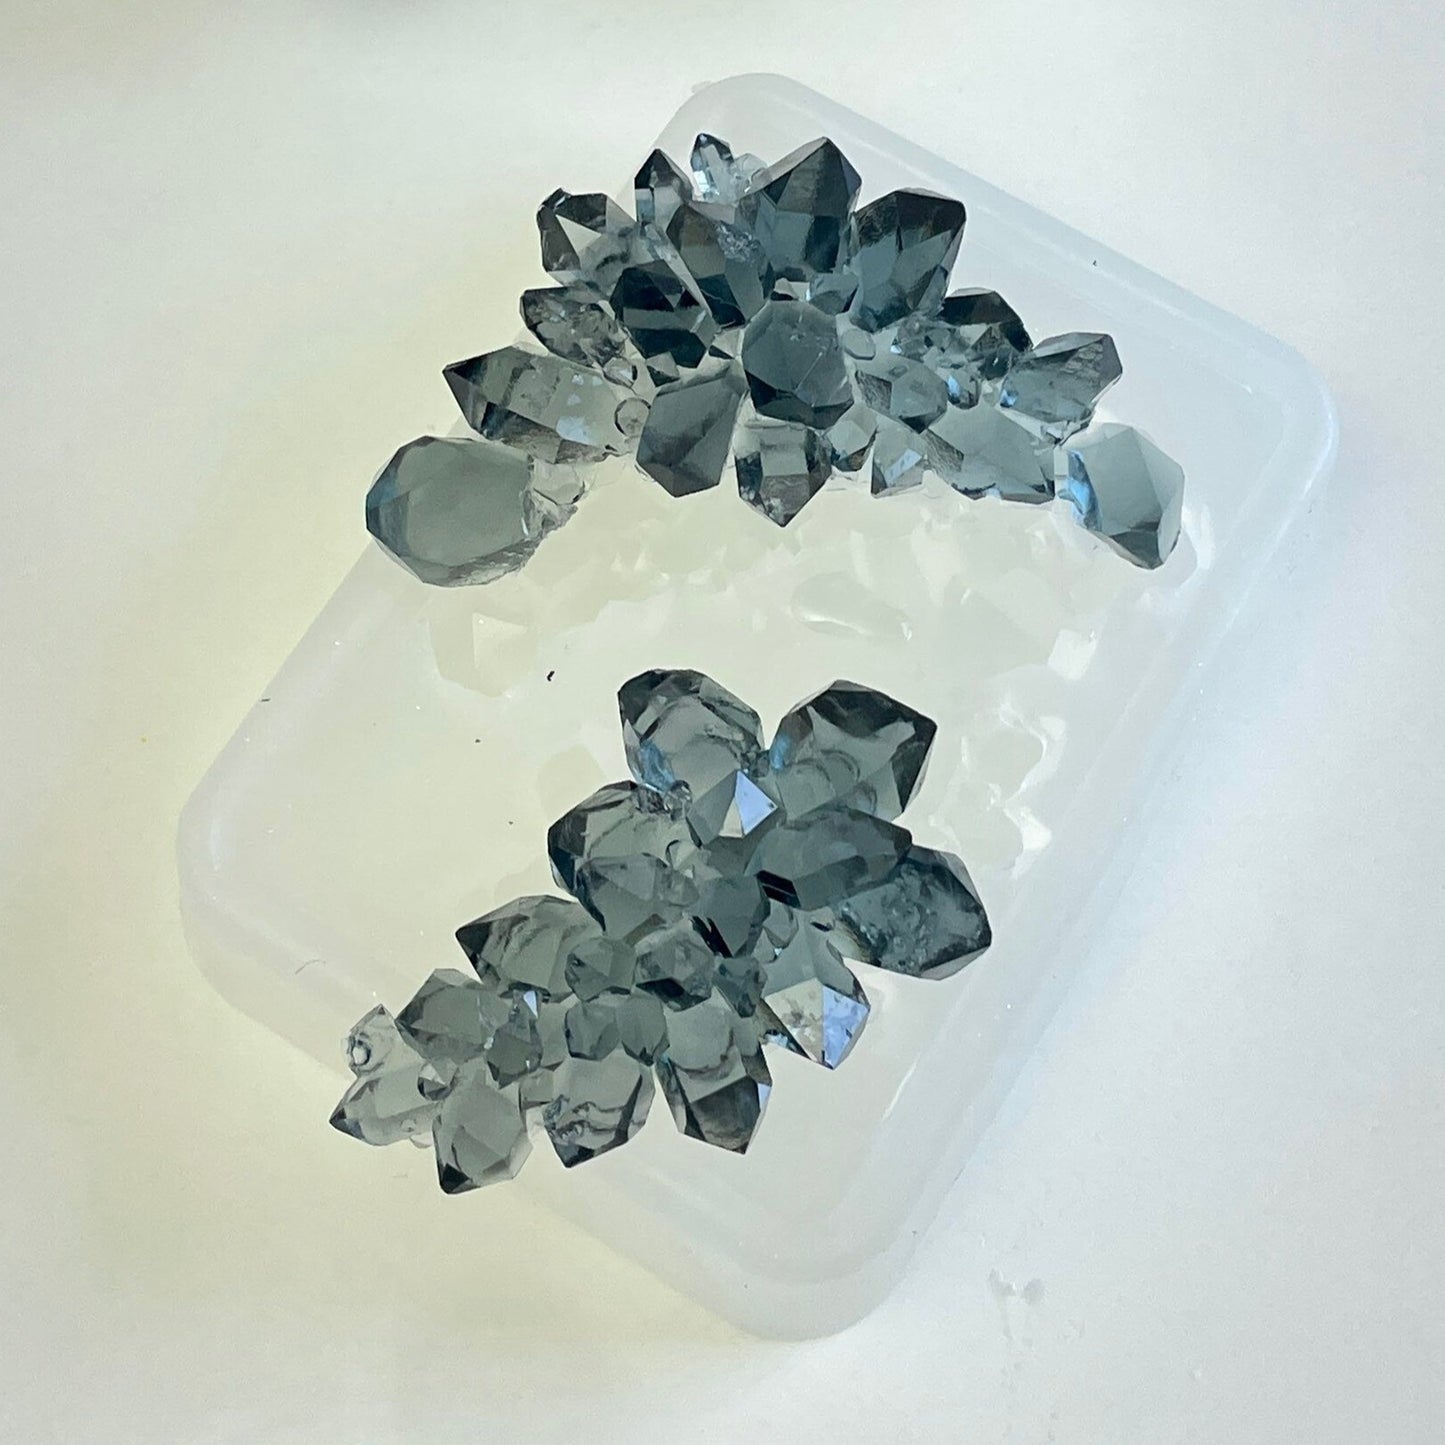 Funkeln und glänzen Sie mit unserem 2er-Set Luxus-Kristallformen: Perfekt für Kristall-Druzy-Designs